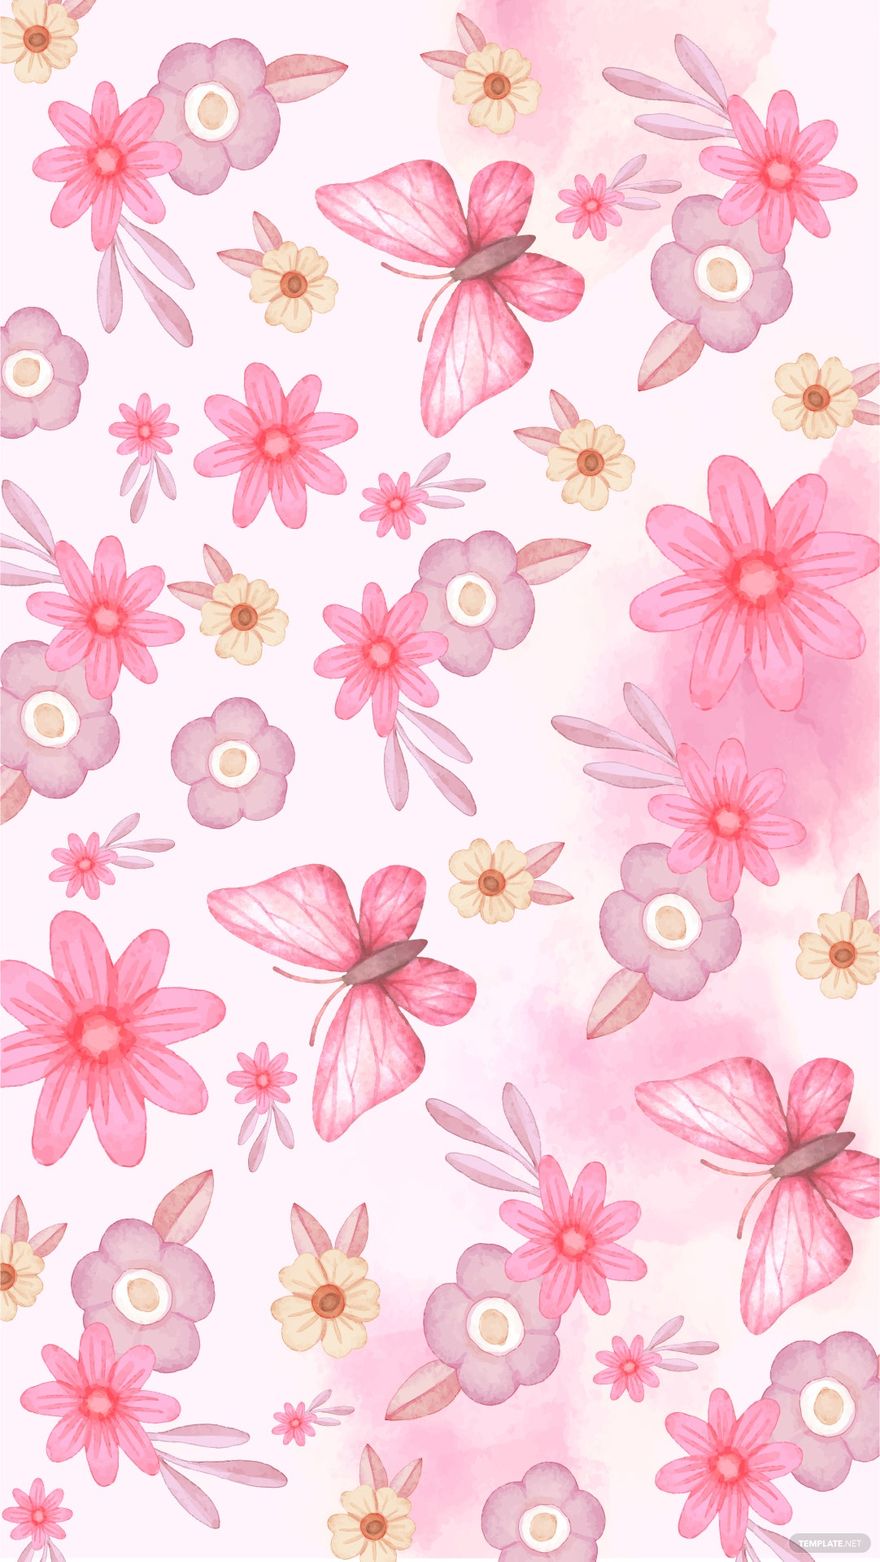 Free Watercolor Pink Floral Background - EPS, Illustrator, JPG, SVG |  